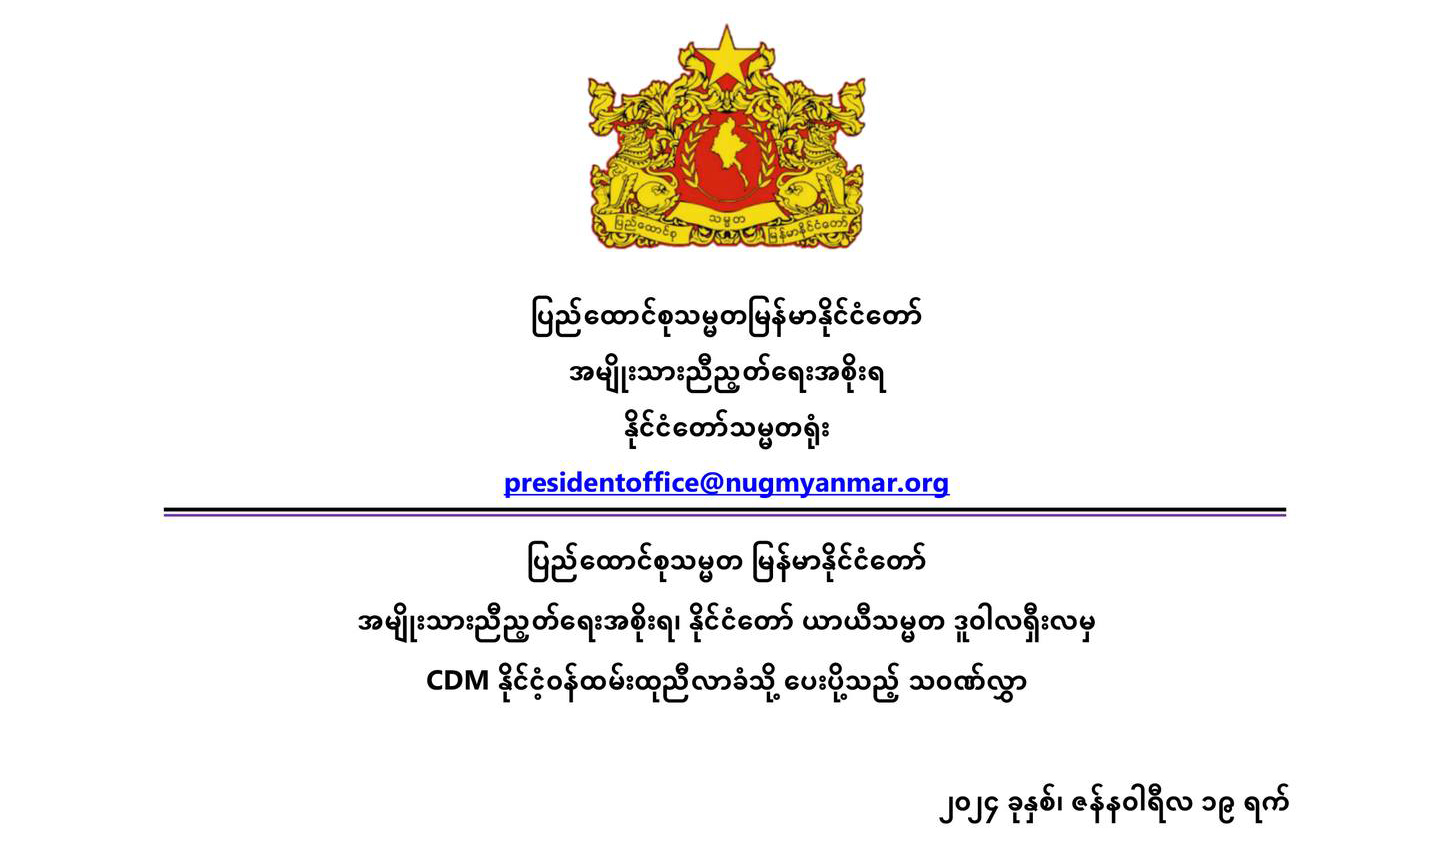 ပြည်ထောင်စုသမ္မတ မြန်မာနိုင်ငံတော်အမျိုးသားညီညွတ်ရေးအစိုးရ နိုင်ငံတော် ယာယီသမ္မတ ဒူဝါလရှီးလမှ CDM နိုင်ငံ့ဝန်ထမ်းထုညီလာခံသို့ ပေးပို့သည့် သဝဏ်လွှာ